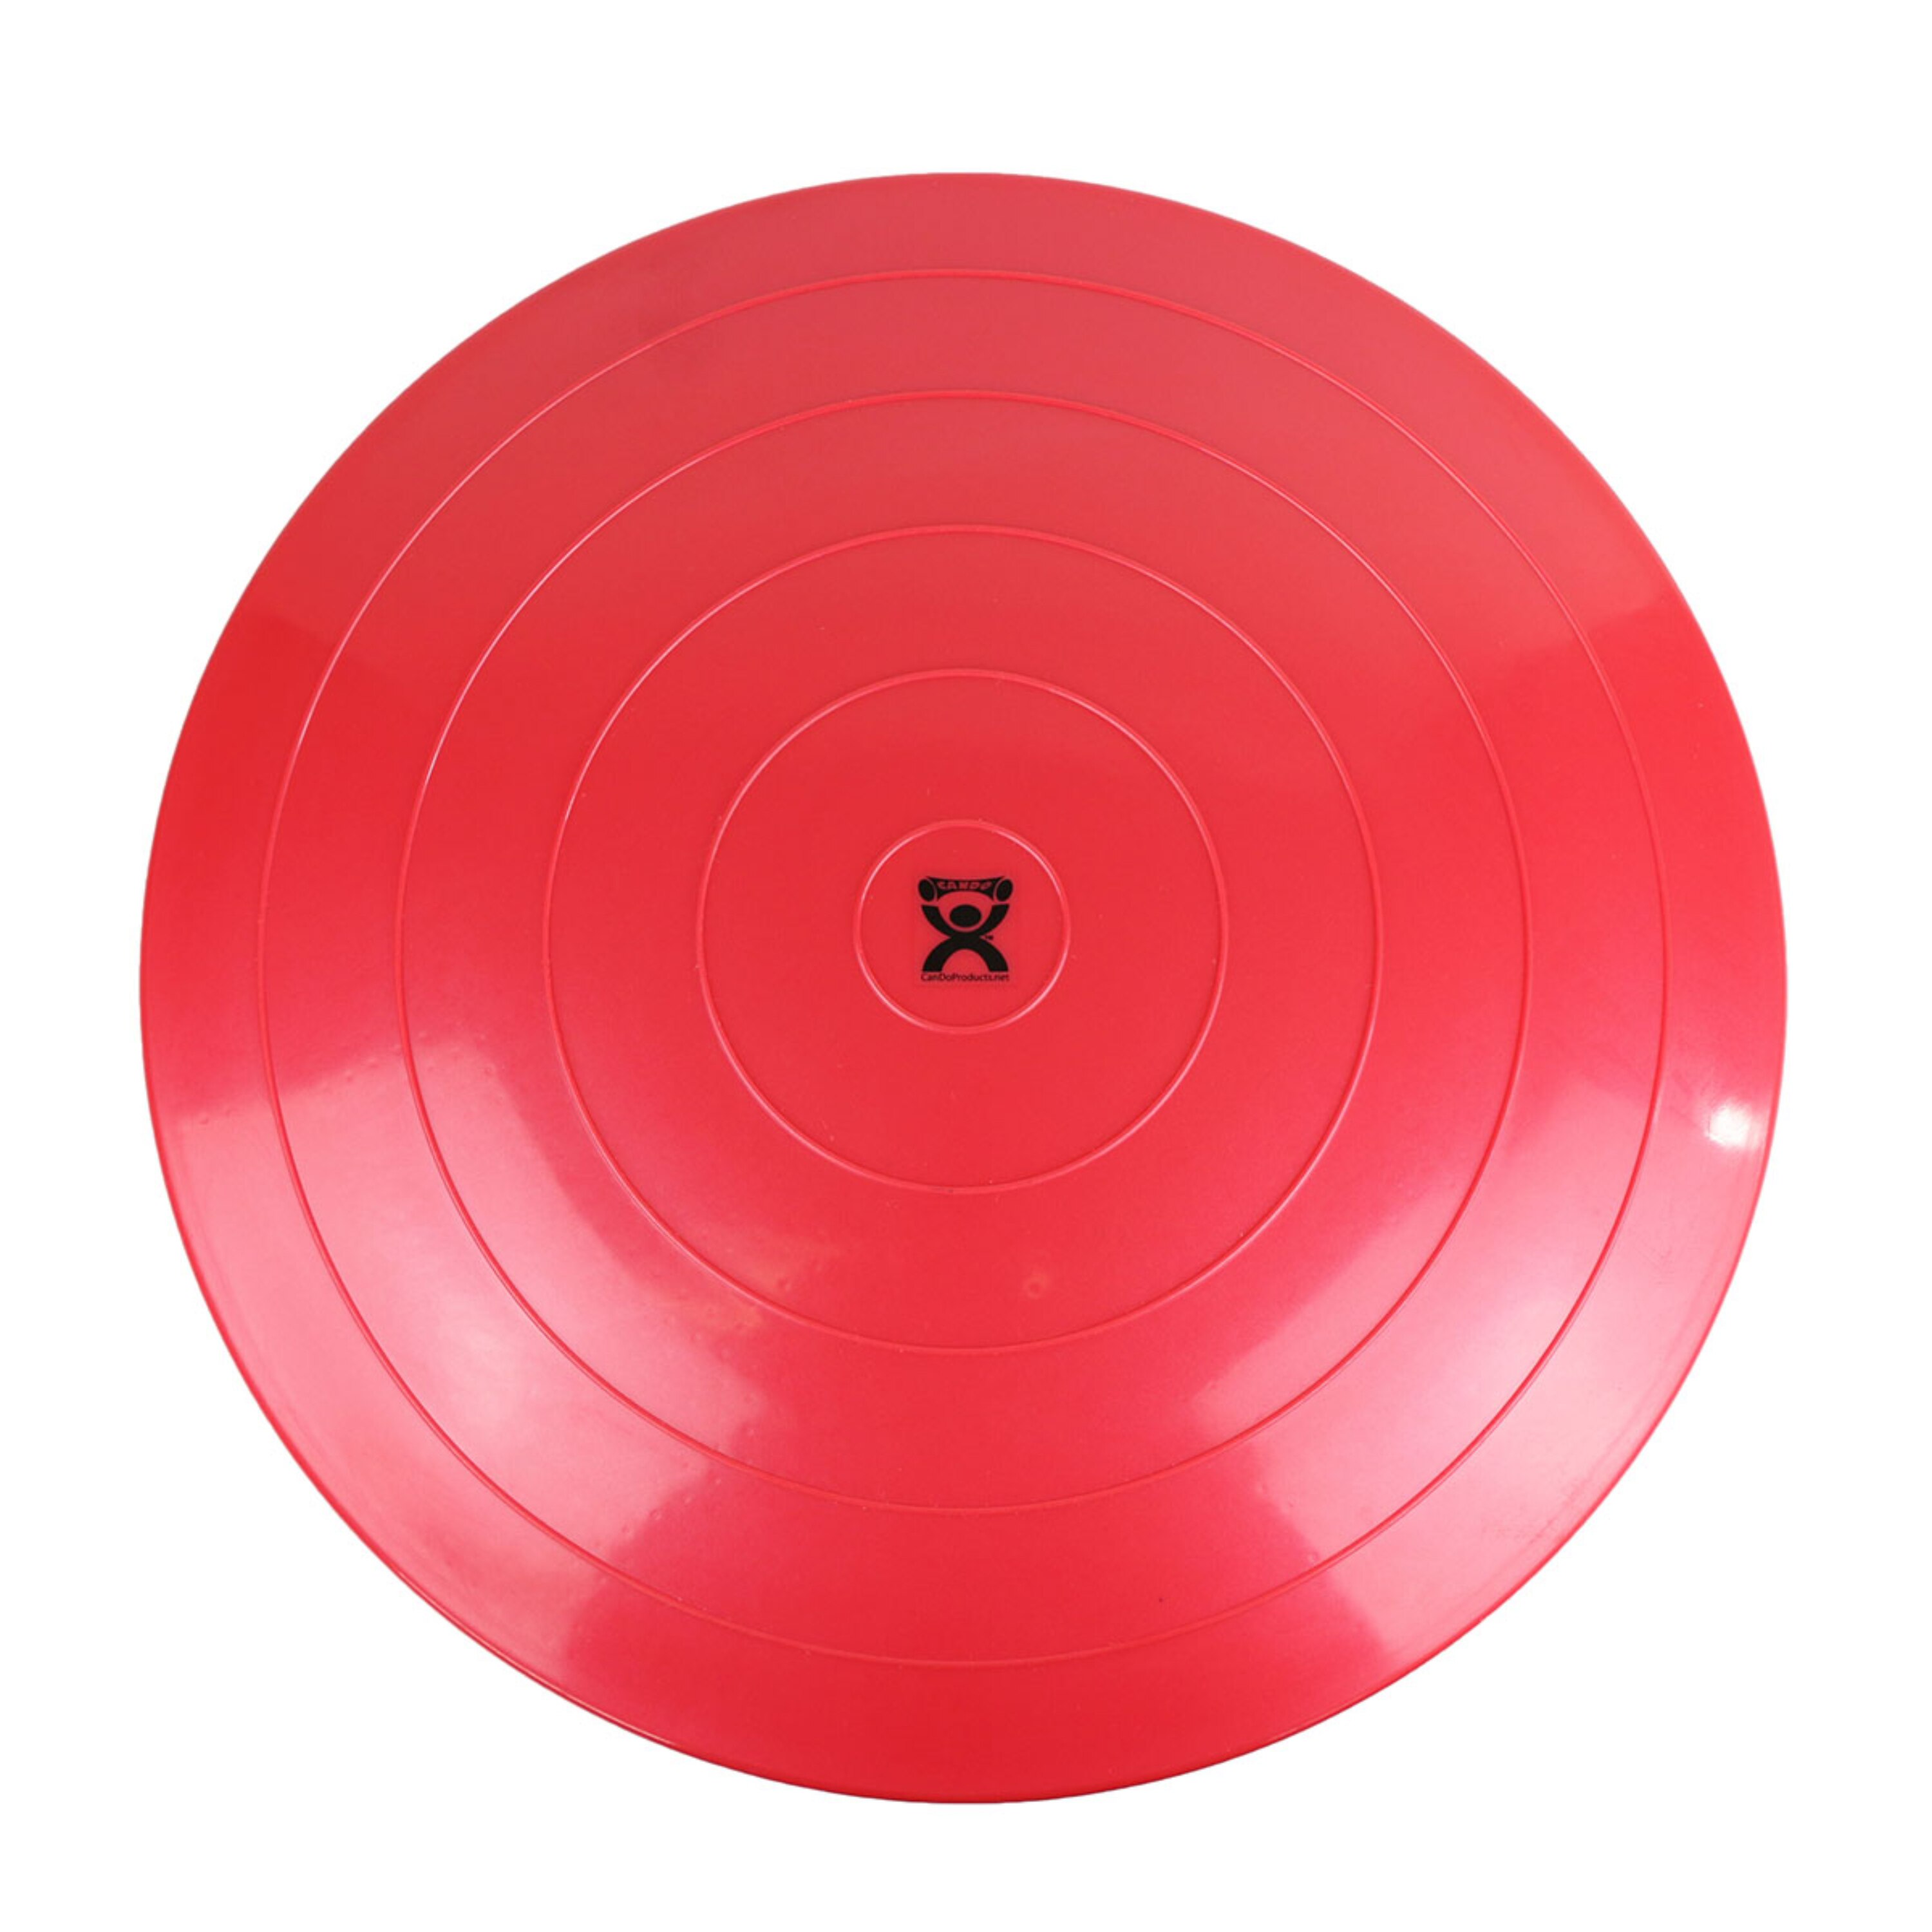 Fabrication Enterprises CanDo Balance Disc, 24 Diameter, Red , CVS